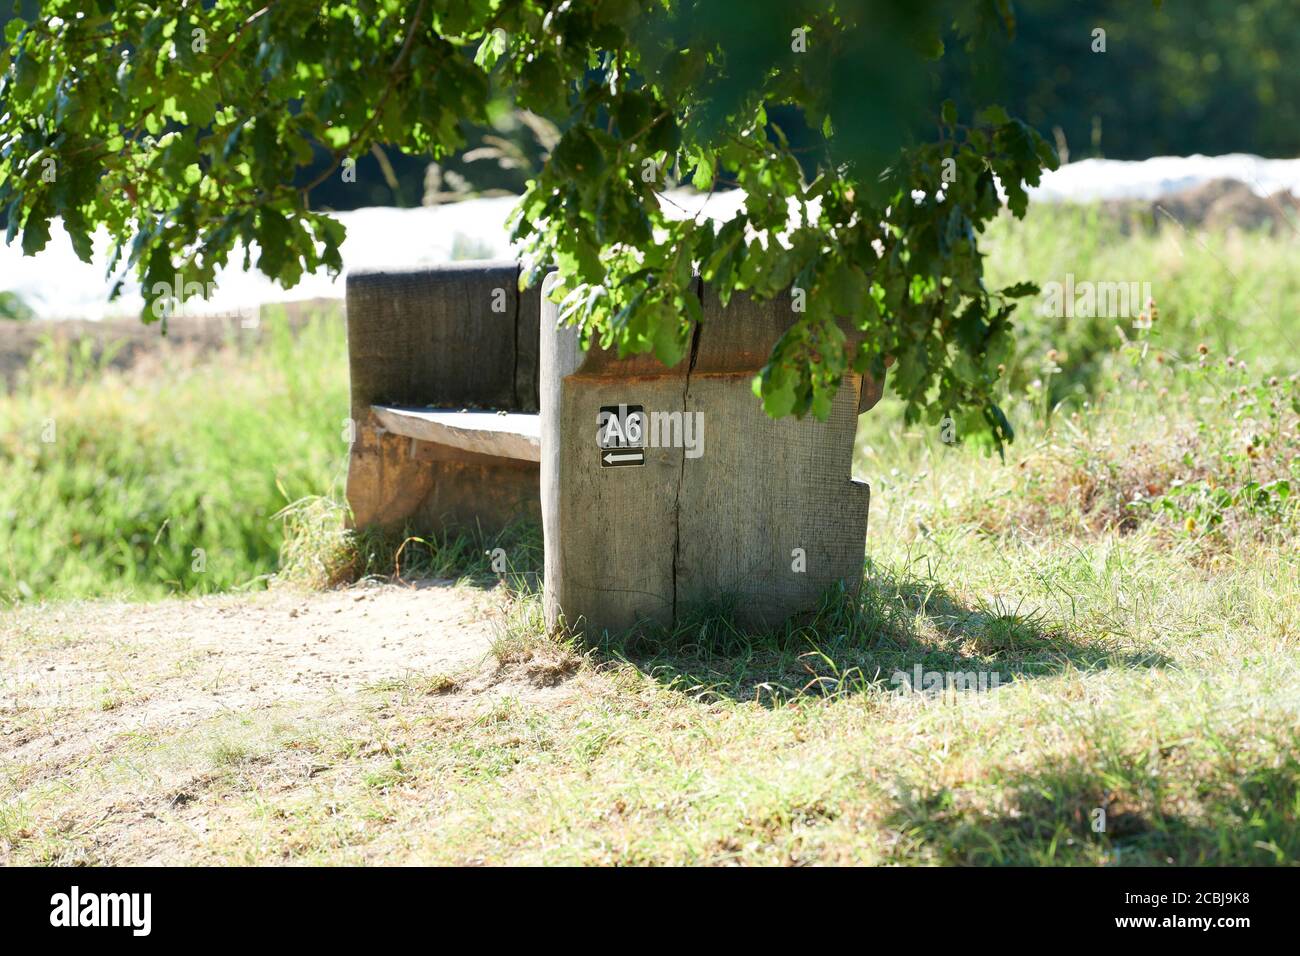 Bank unter einem Baum laedt zum ausruhen ein. Auf der Seite ist ein Hinweis zu einem Wanderweg. Stock Photo